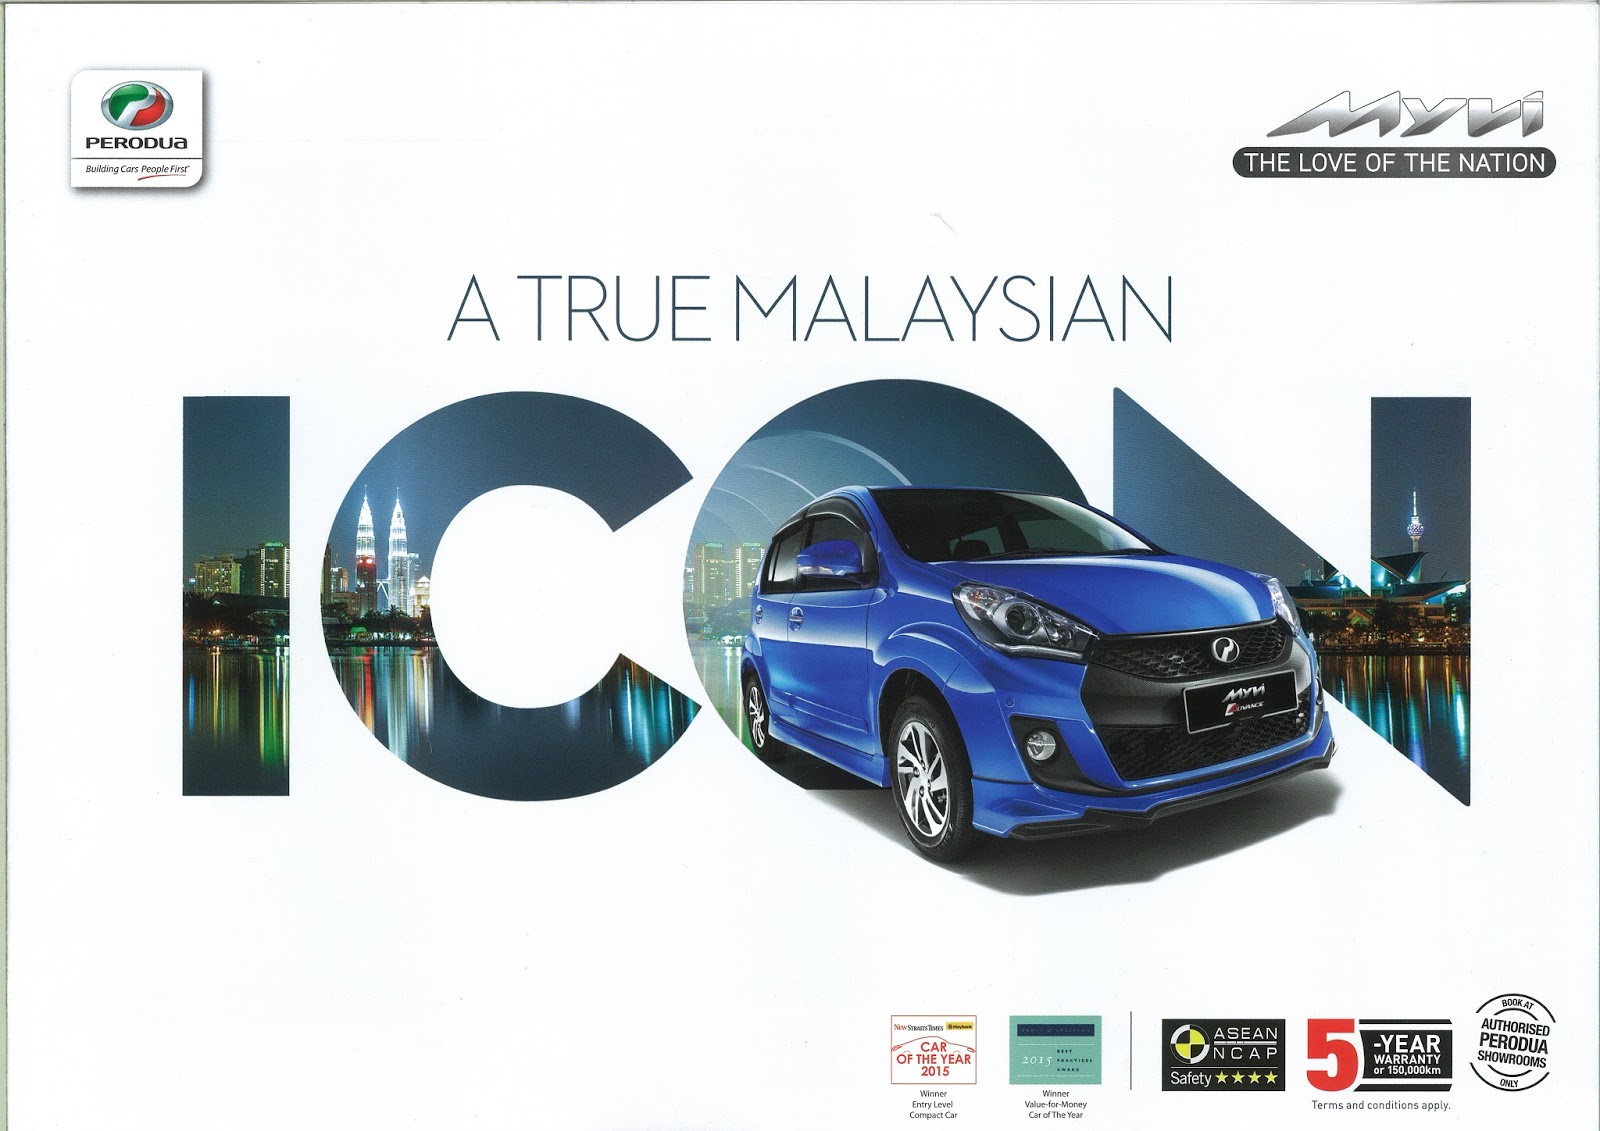 Promosi Perodua Baharu: Promosi Raya Perodua Mvyi 2017 